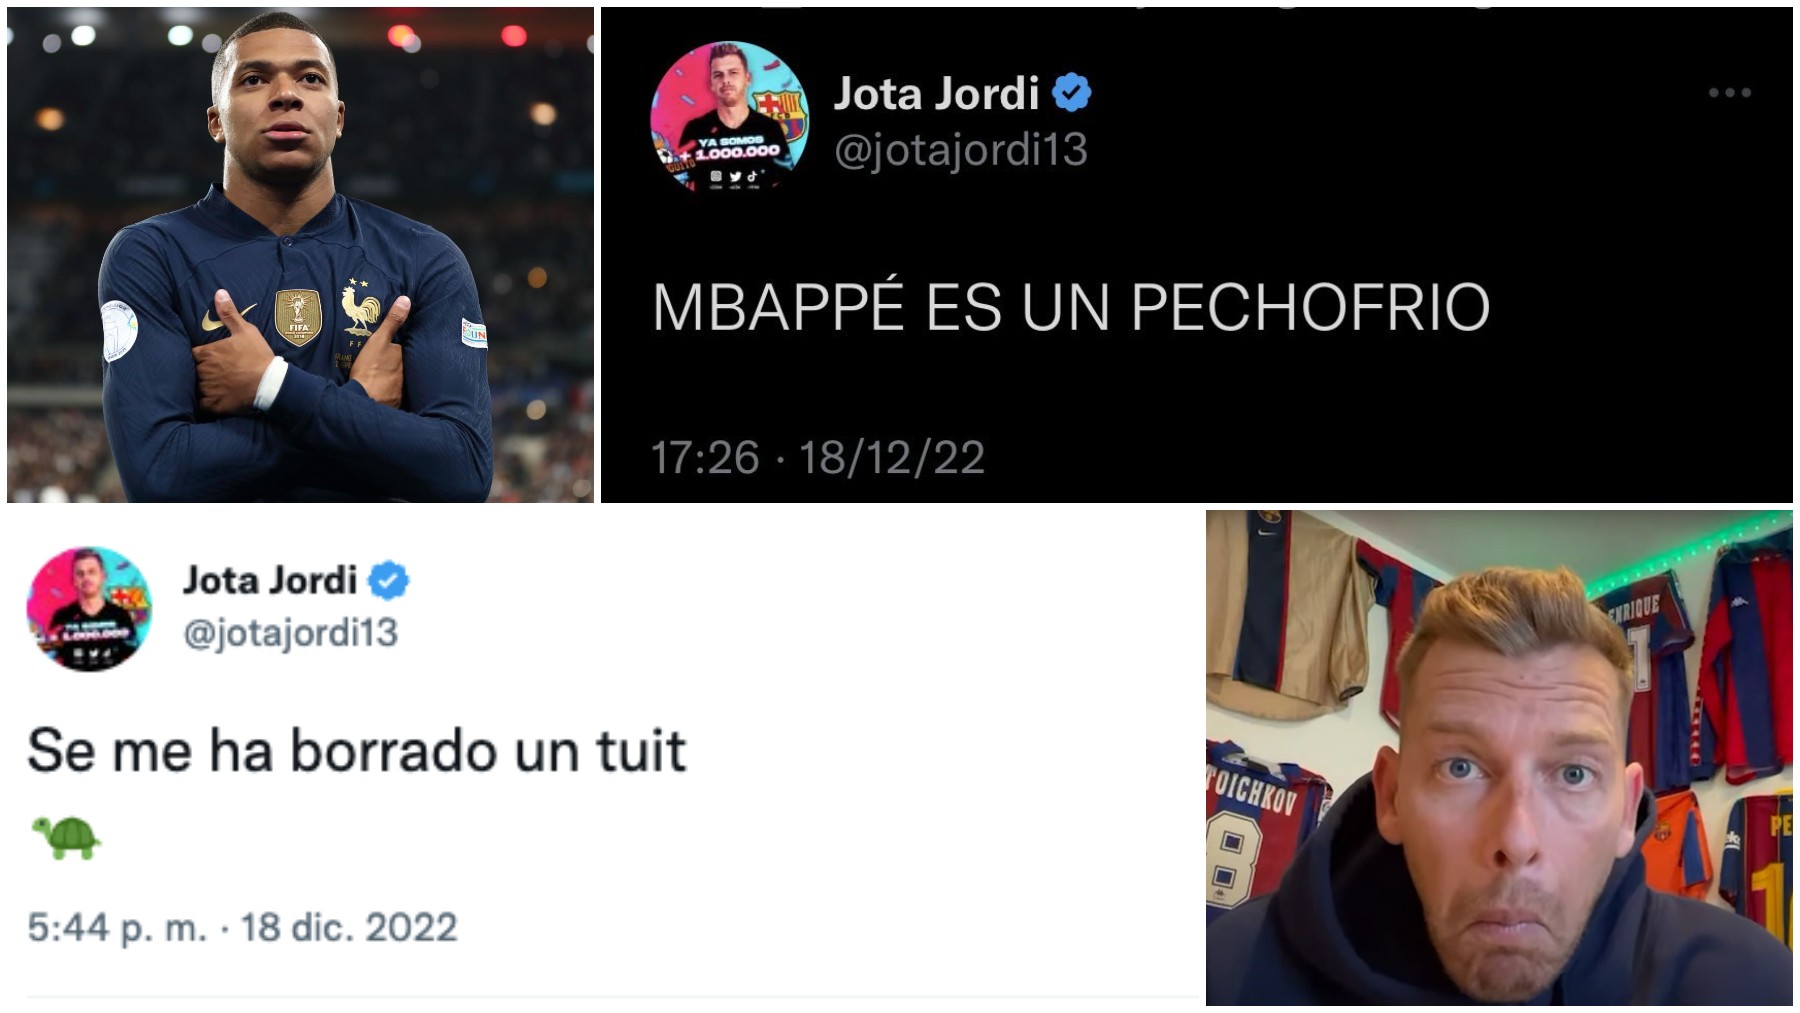 Mbappé retrató a Jota Jordi.